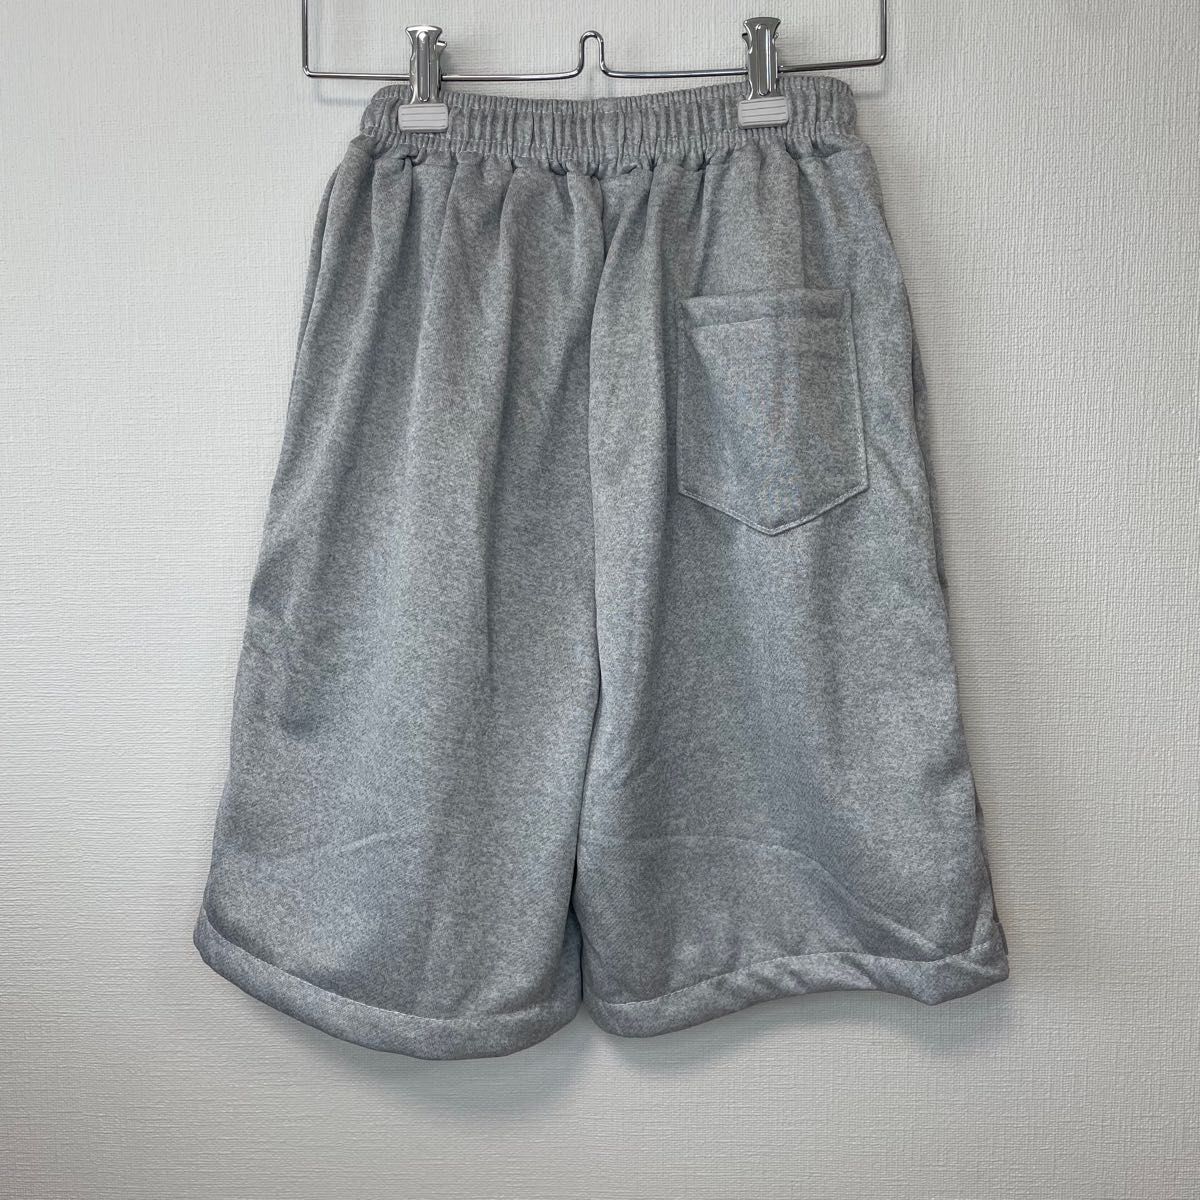 【最終値下げ・ラス1】新品 レイヤード風 ハーフパンツ メンズ Lサイズ グレー 半ズボン